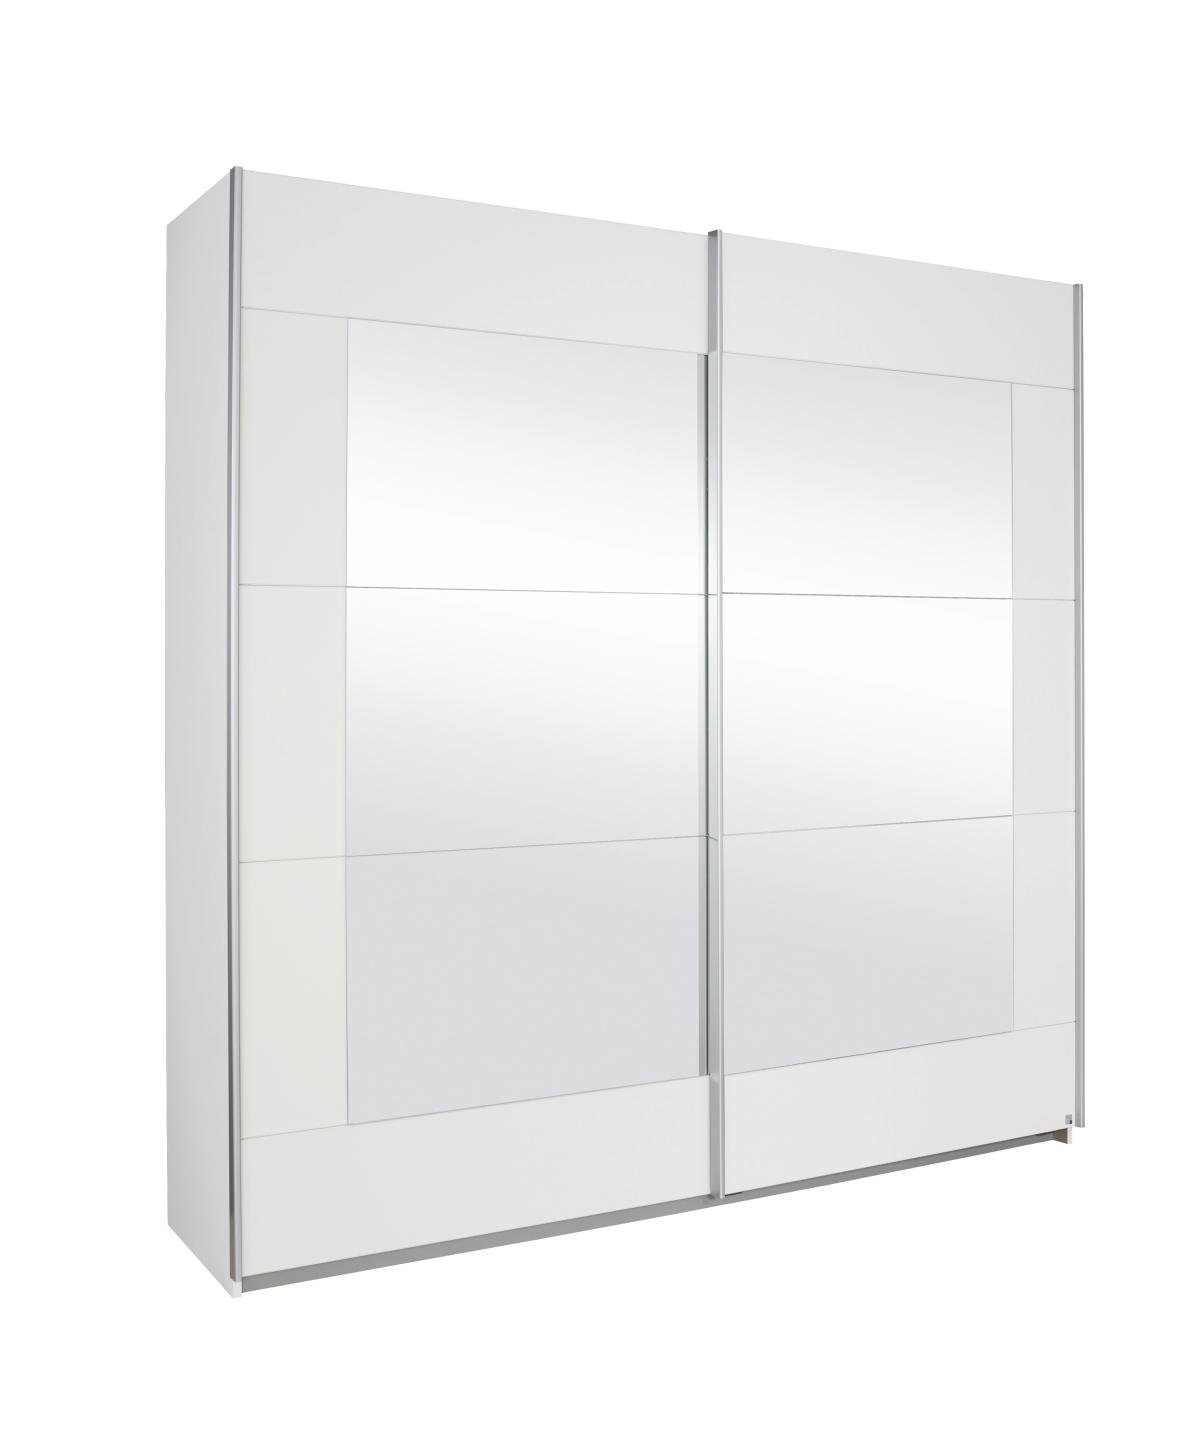 Rauch Möbel Alegro Schrank Schwebetürenschrank Kleiderschrank in Weiß mit Spiegel 2-türig, inklusive Zubehörpaket Basic 2 Kleiderstangen, 2 Einlegeböden BxHxT 226x210x62 cm